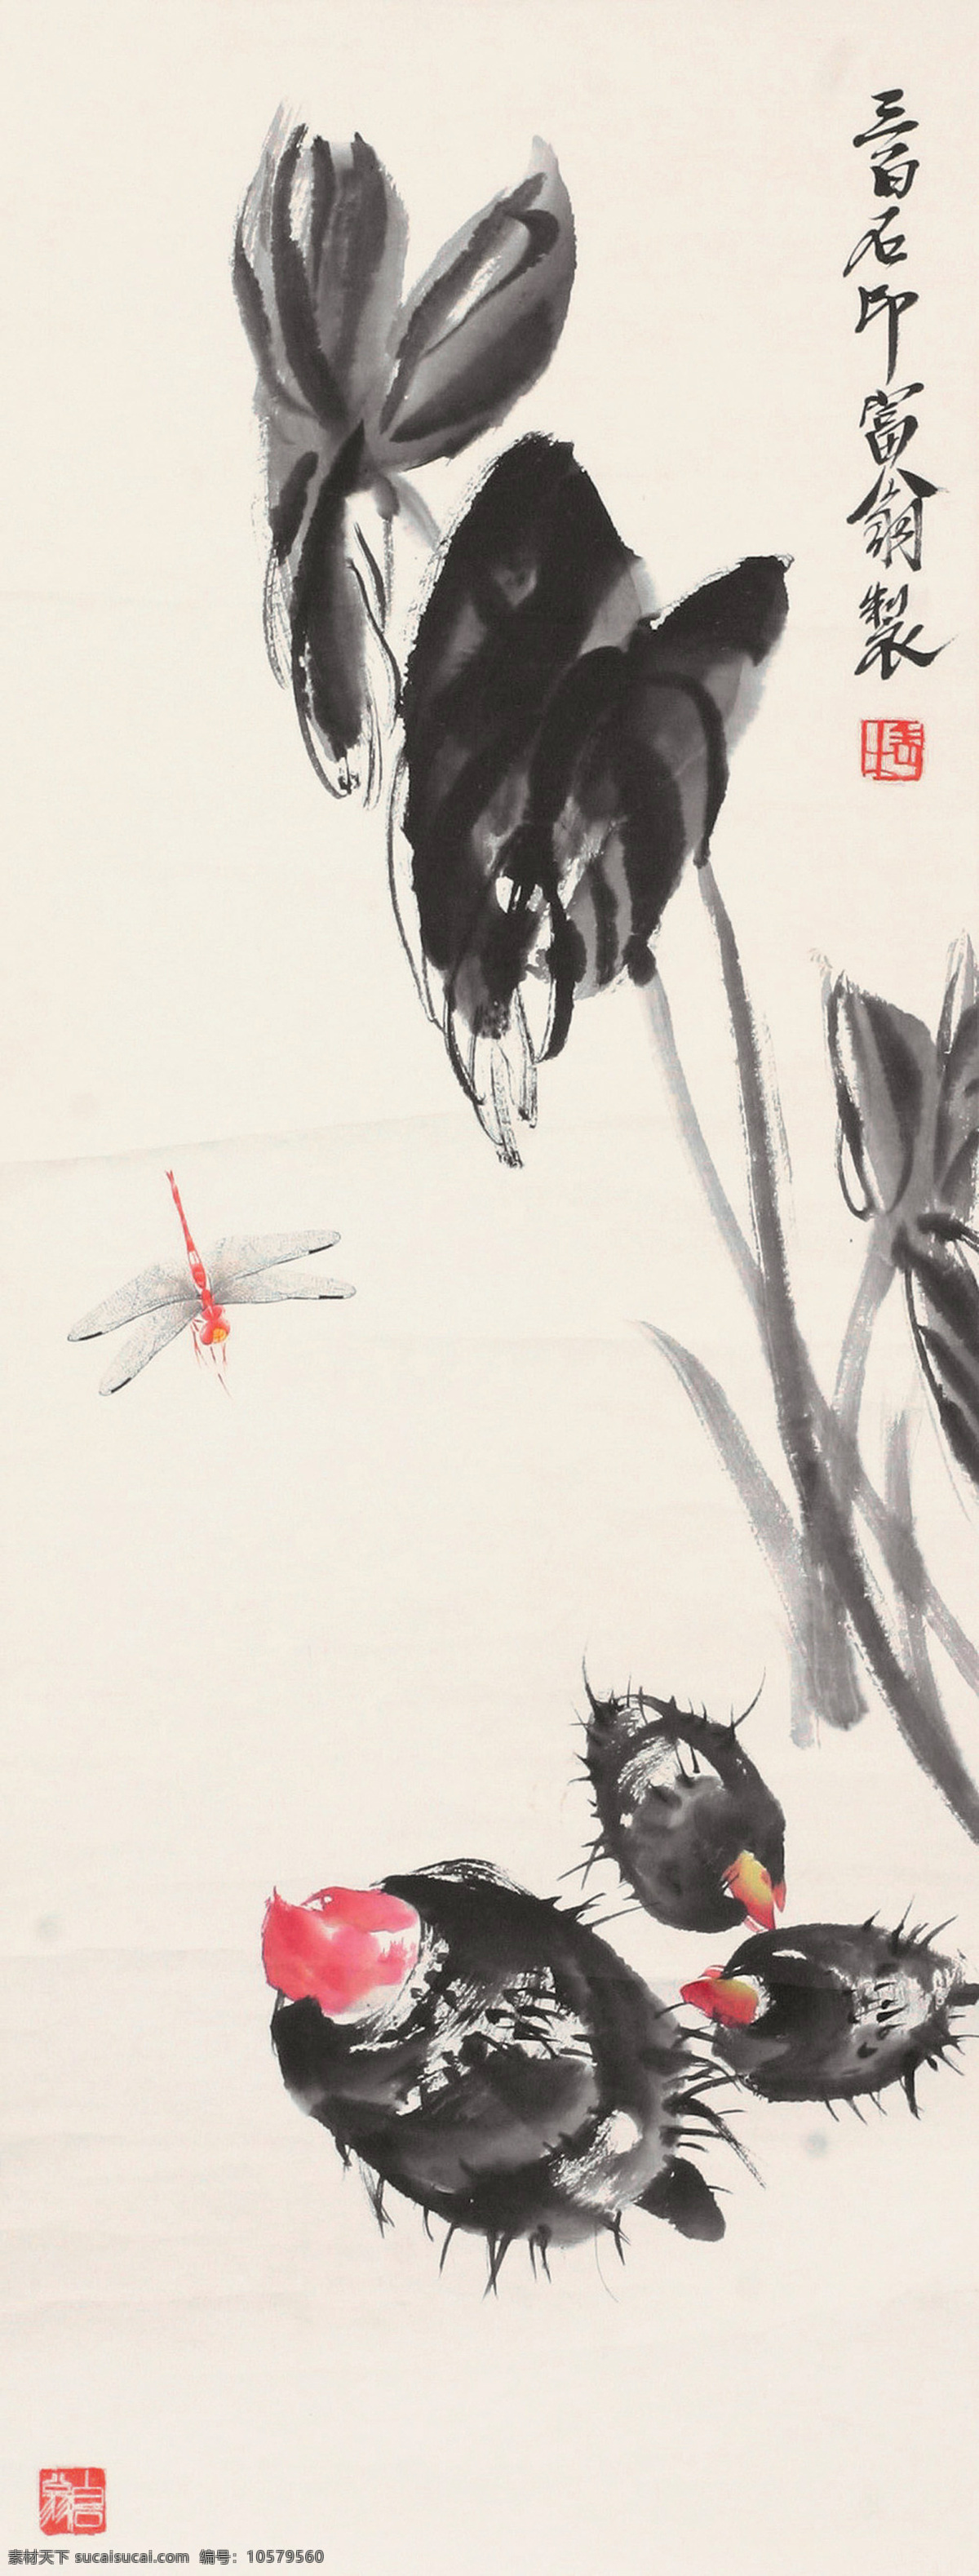 芋头蜻蜓 国画 齐白石 芋叶 蜻蜓 芋头 文化艺术 绘画书法 花卉 草虫